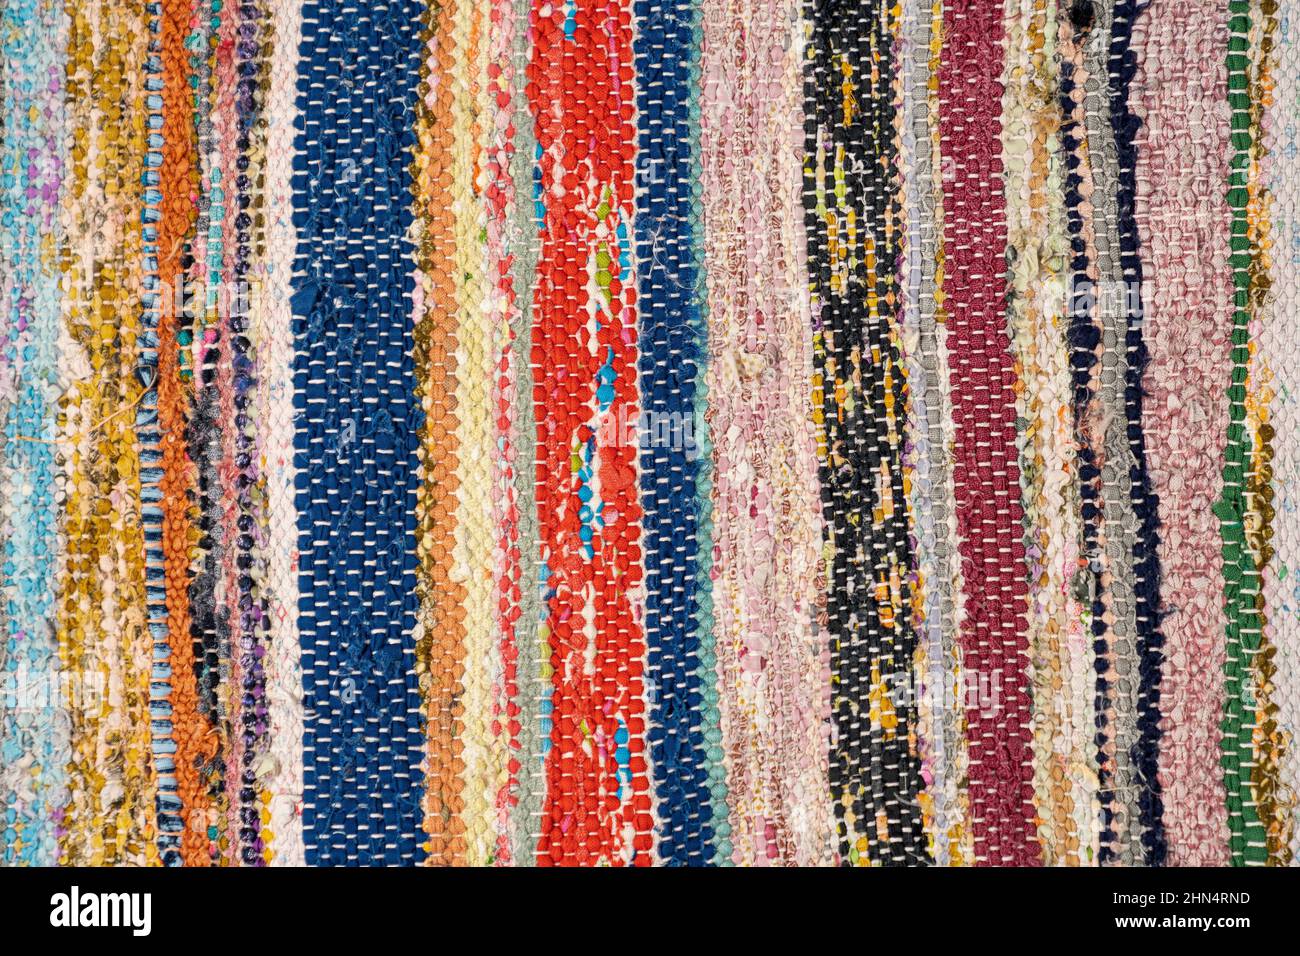 Gros plan sur un tapis traditionnel et coloré fait à la main et fabriqué à partir de matériaux recyclés. Photo de haute qualité Banque D'Images